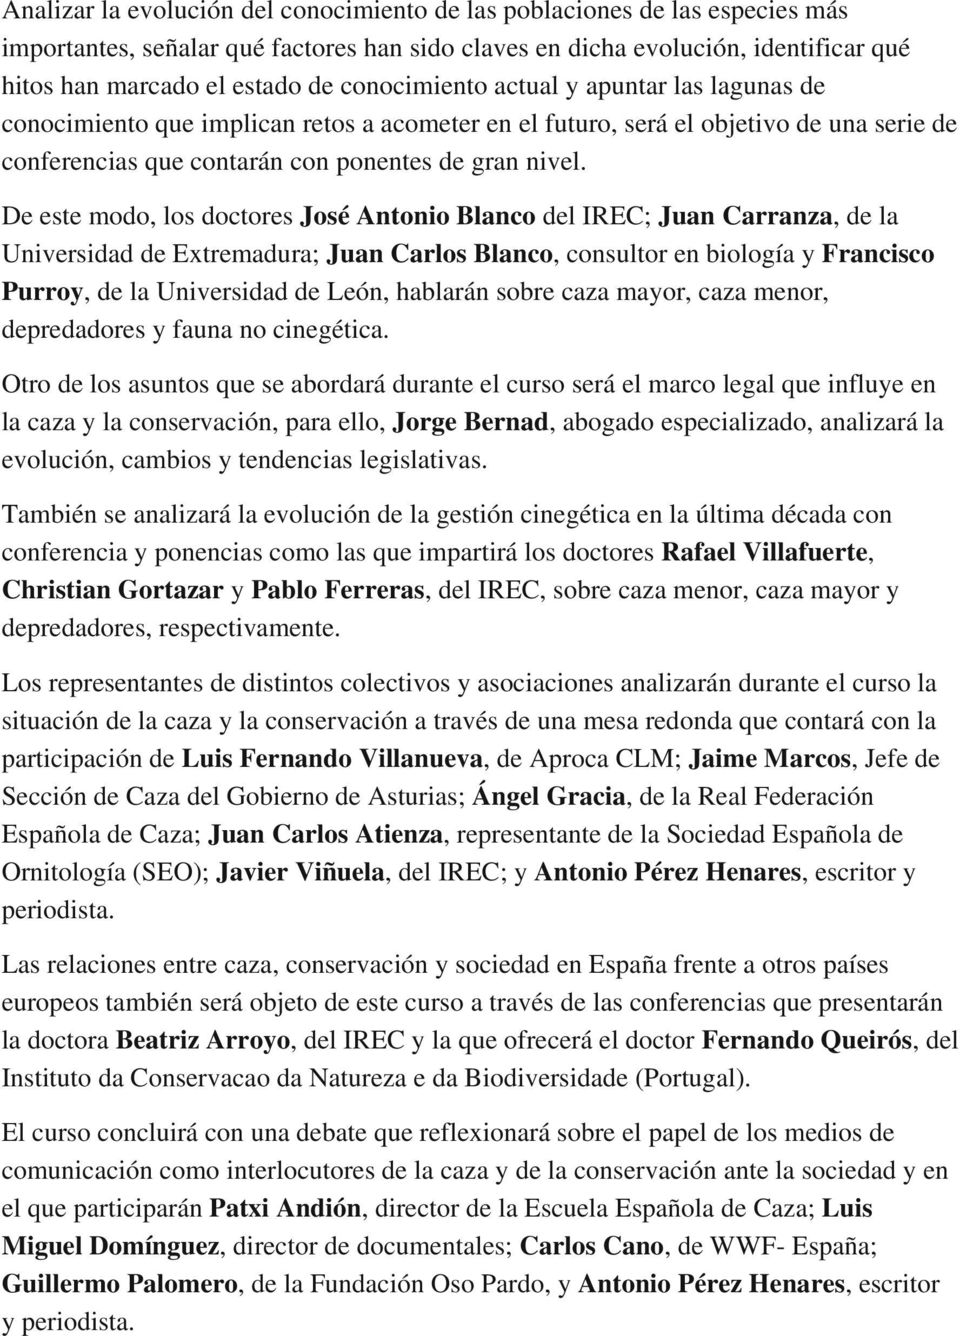 De este modo, los doctores José Antonio Blanco del IREC; Juan Carranza, de la Universidad de Extremadura; Juan Carlos Blanco, consultor en biología y Francisco Purroy, de la Universidad de León,